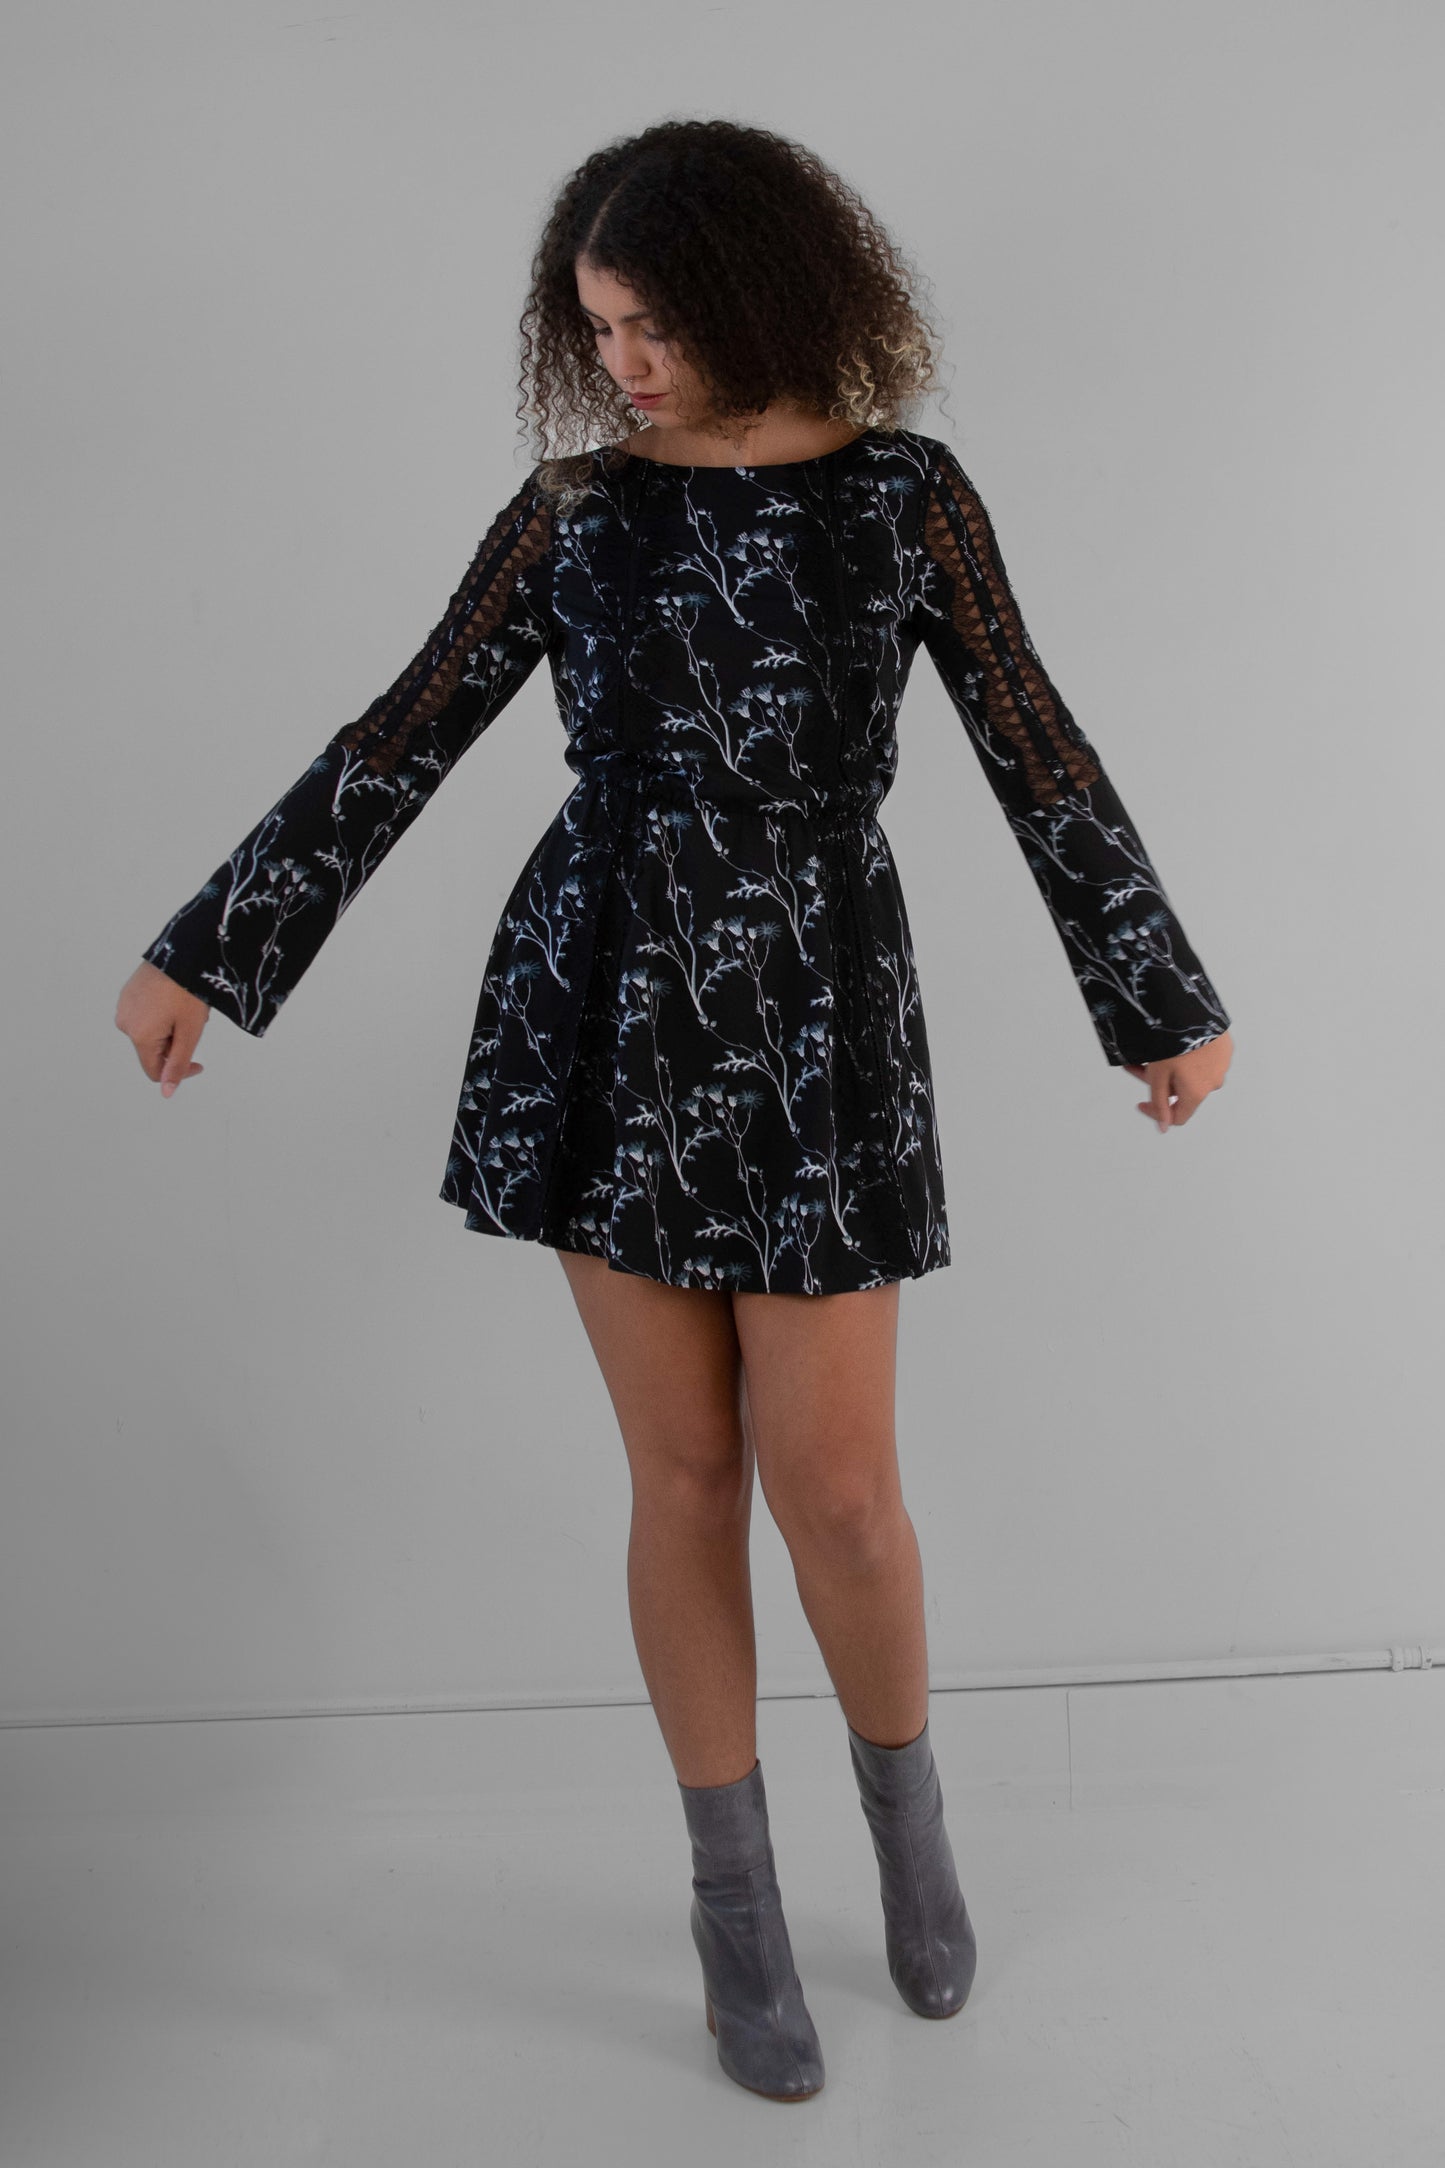 Thakoon Addition "Fall RTW" Mini Dress in Dark Floral - XS